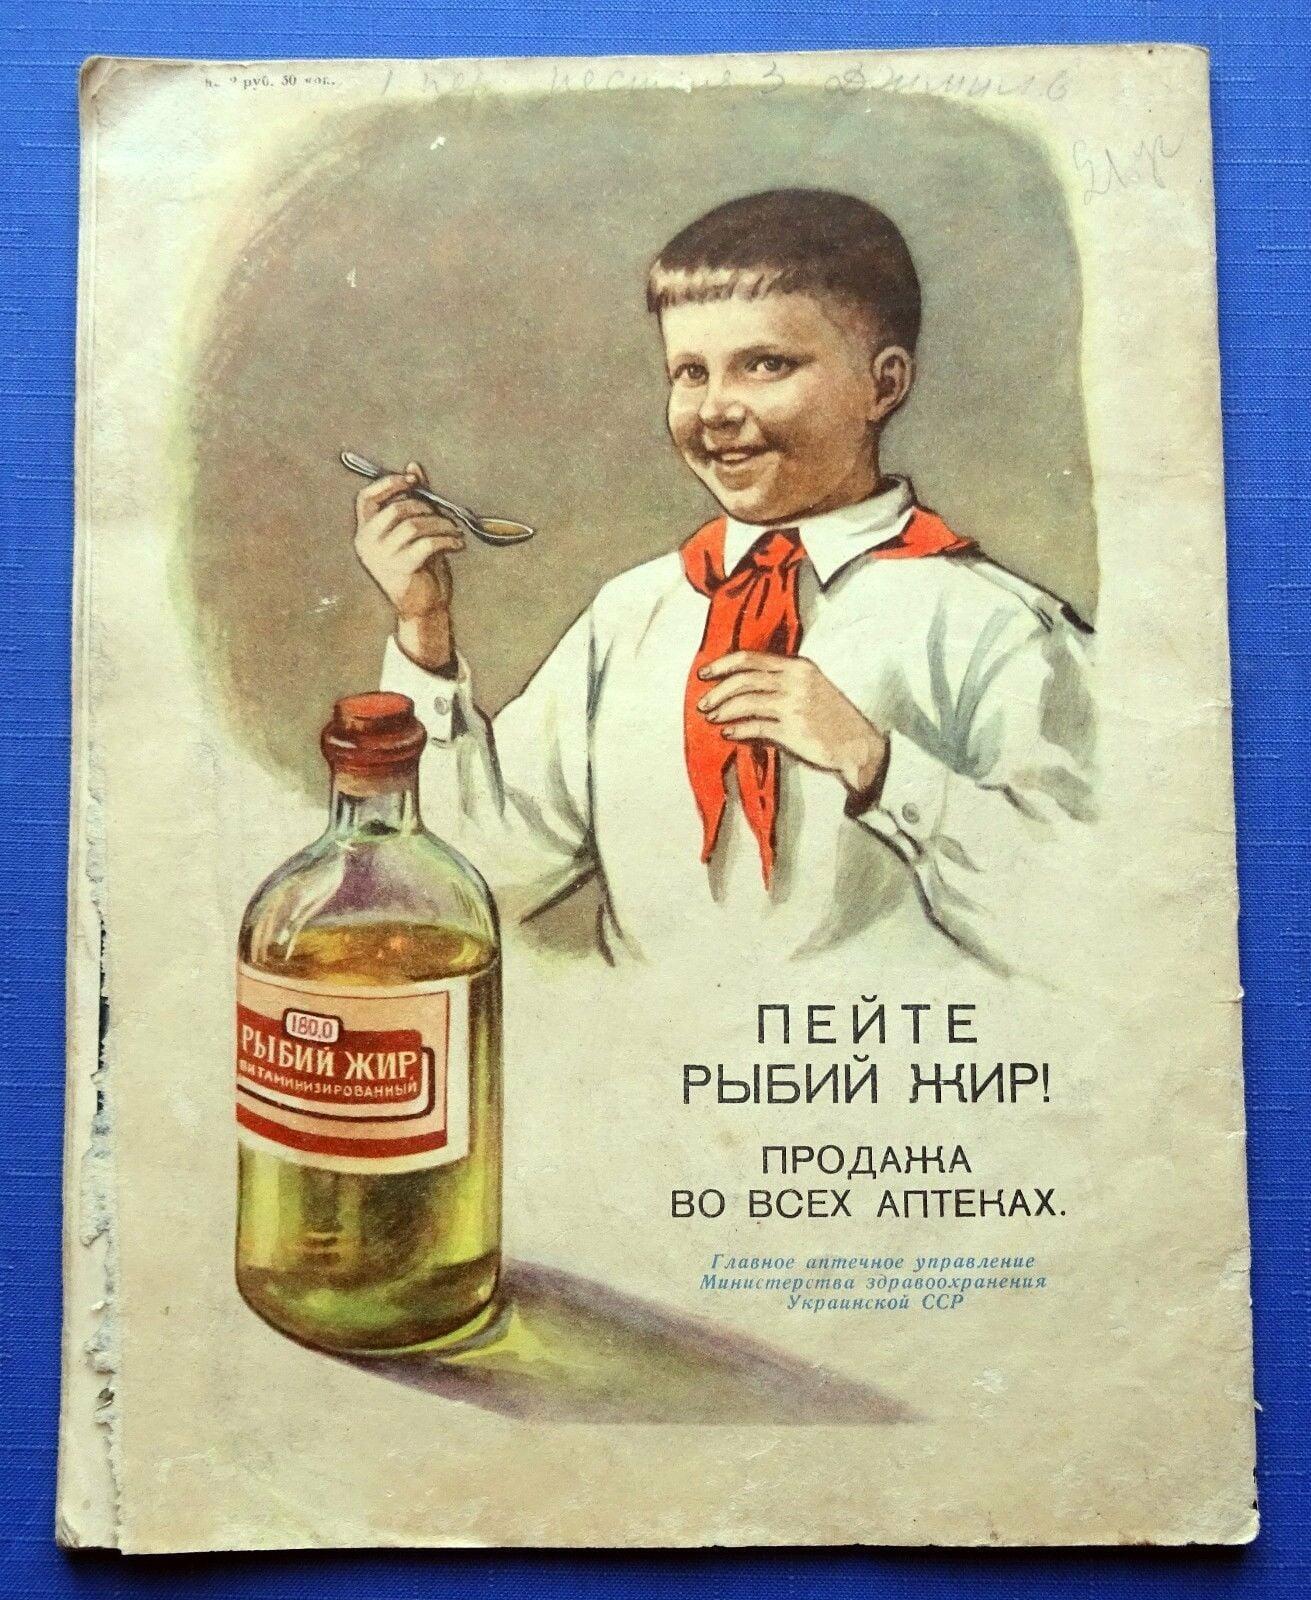 Юмор советского союза. Старые плакаты. Старые рекламные плакаты. Плакаты советского времени. Агитационные плакаты.